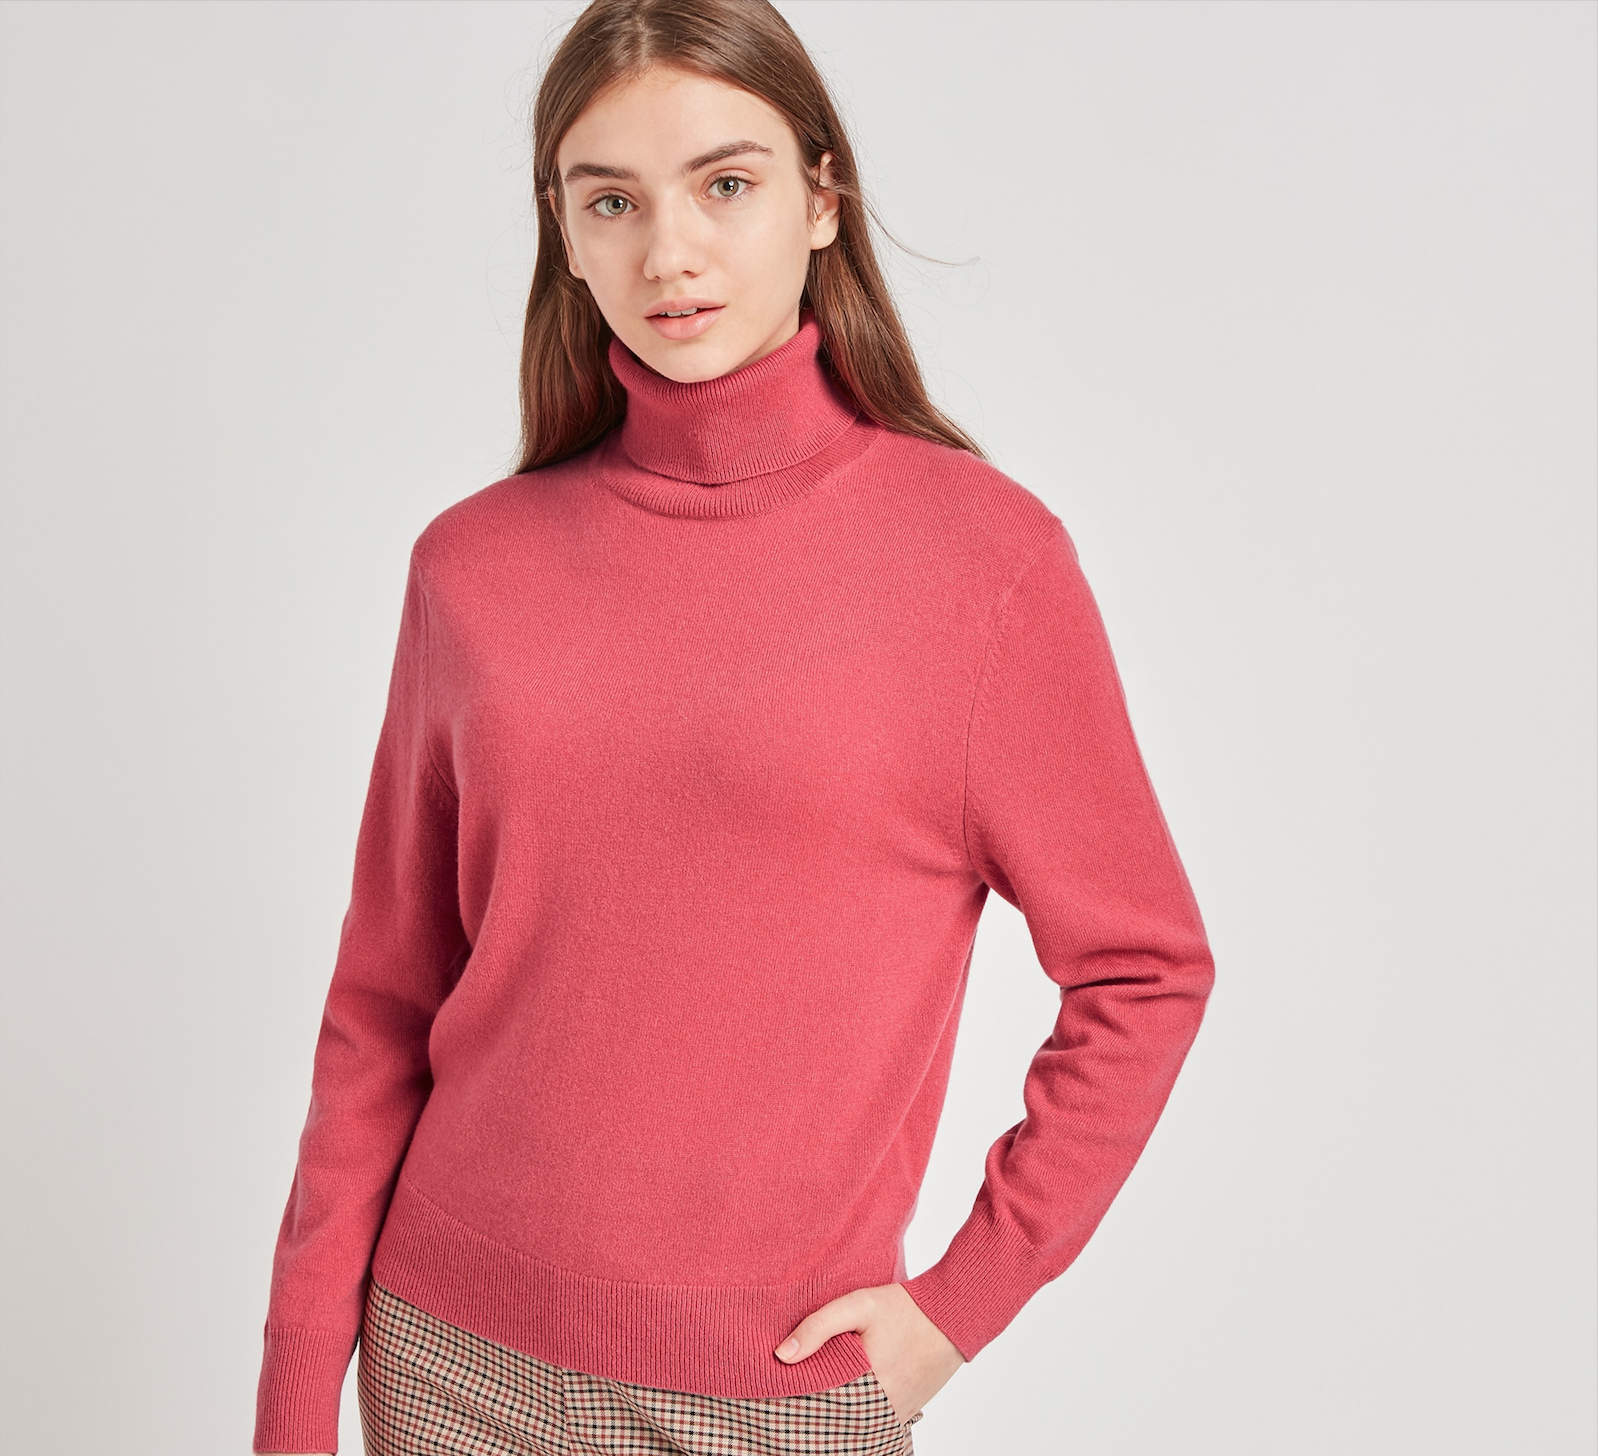 Il dolcevita è la maglia donna coccola moda inverno 2020